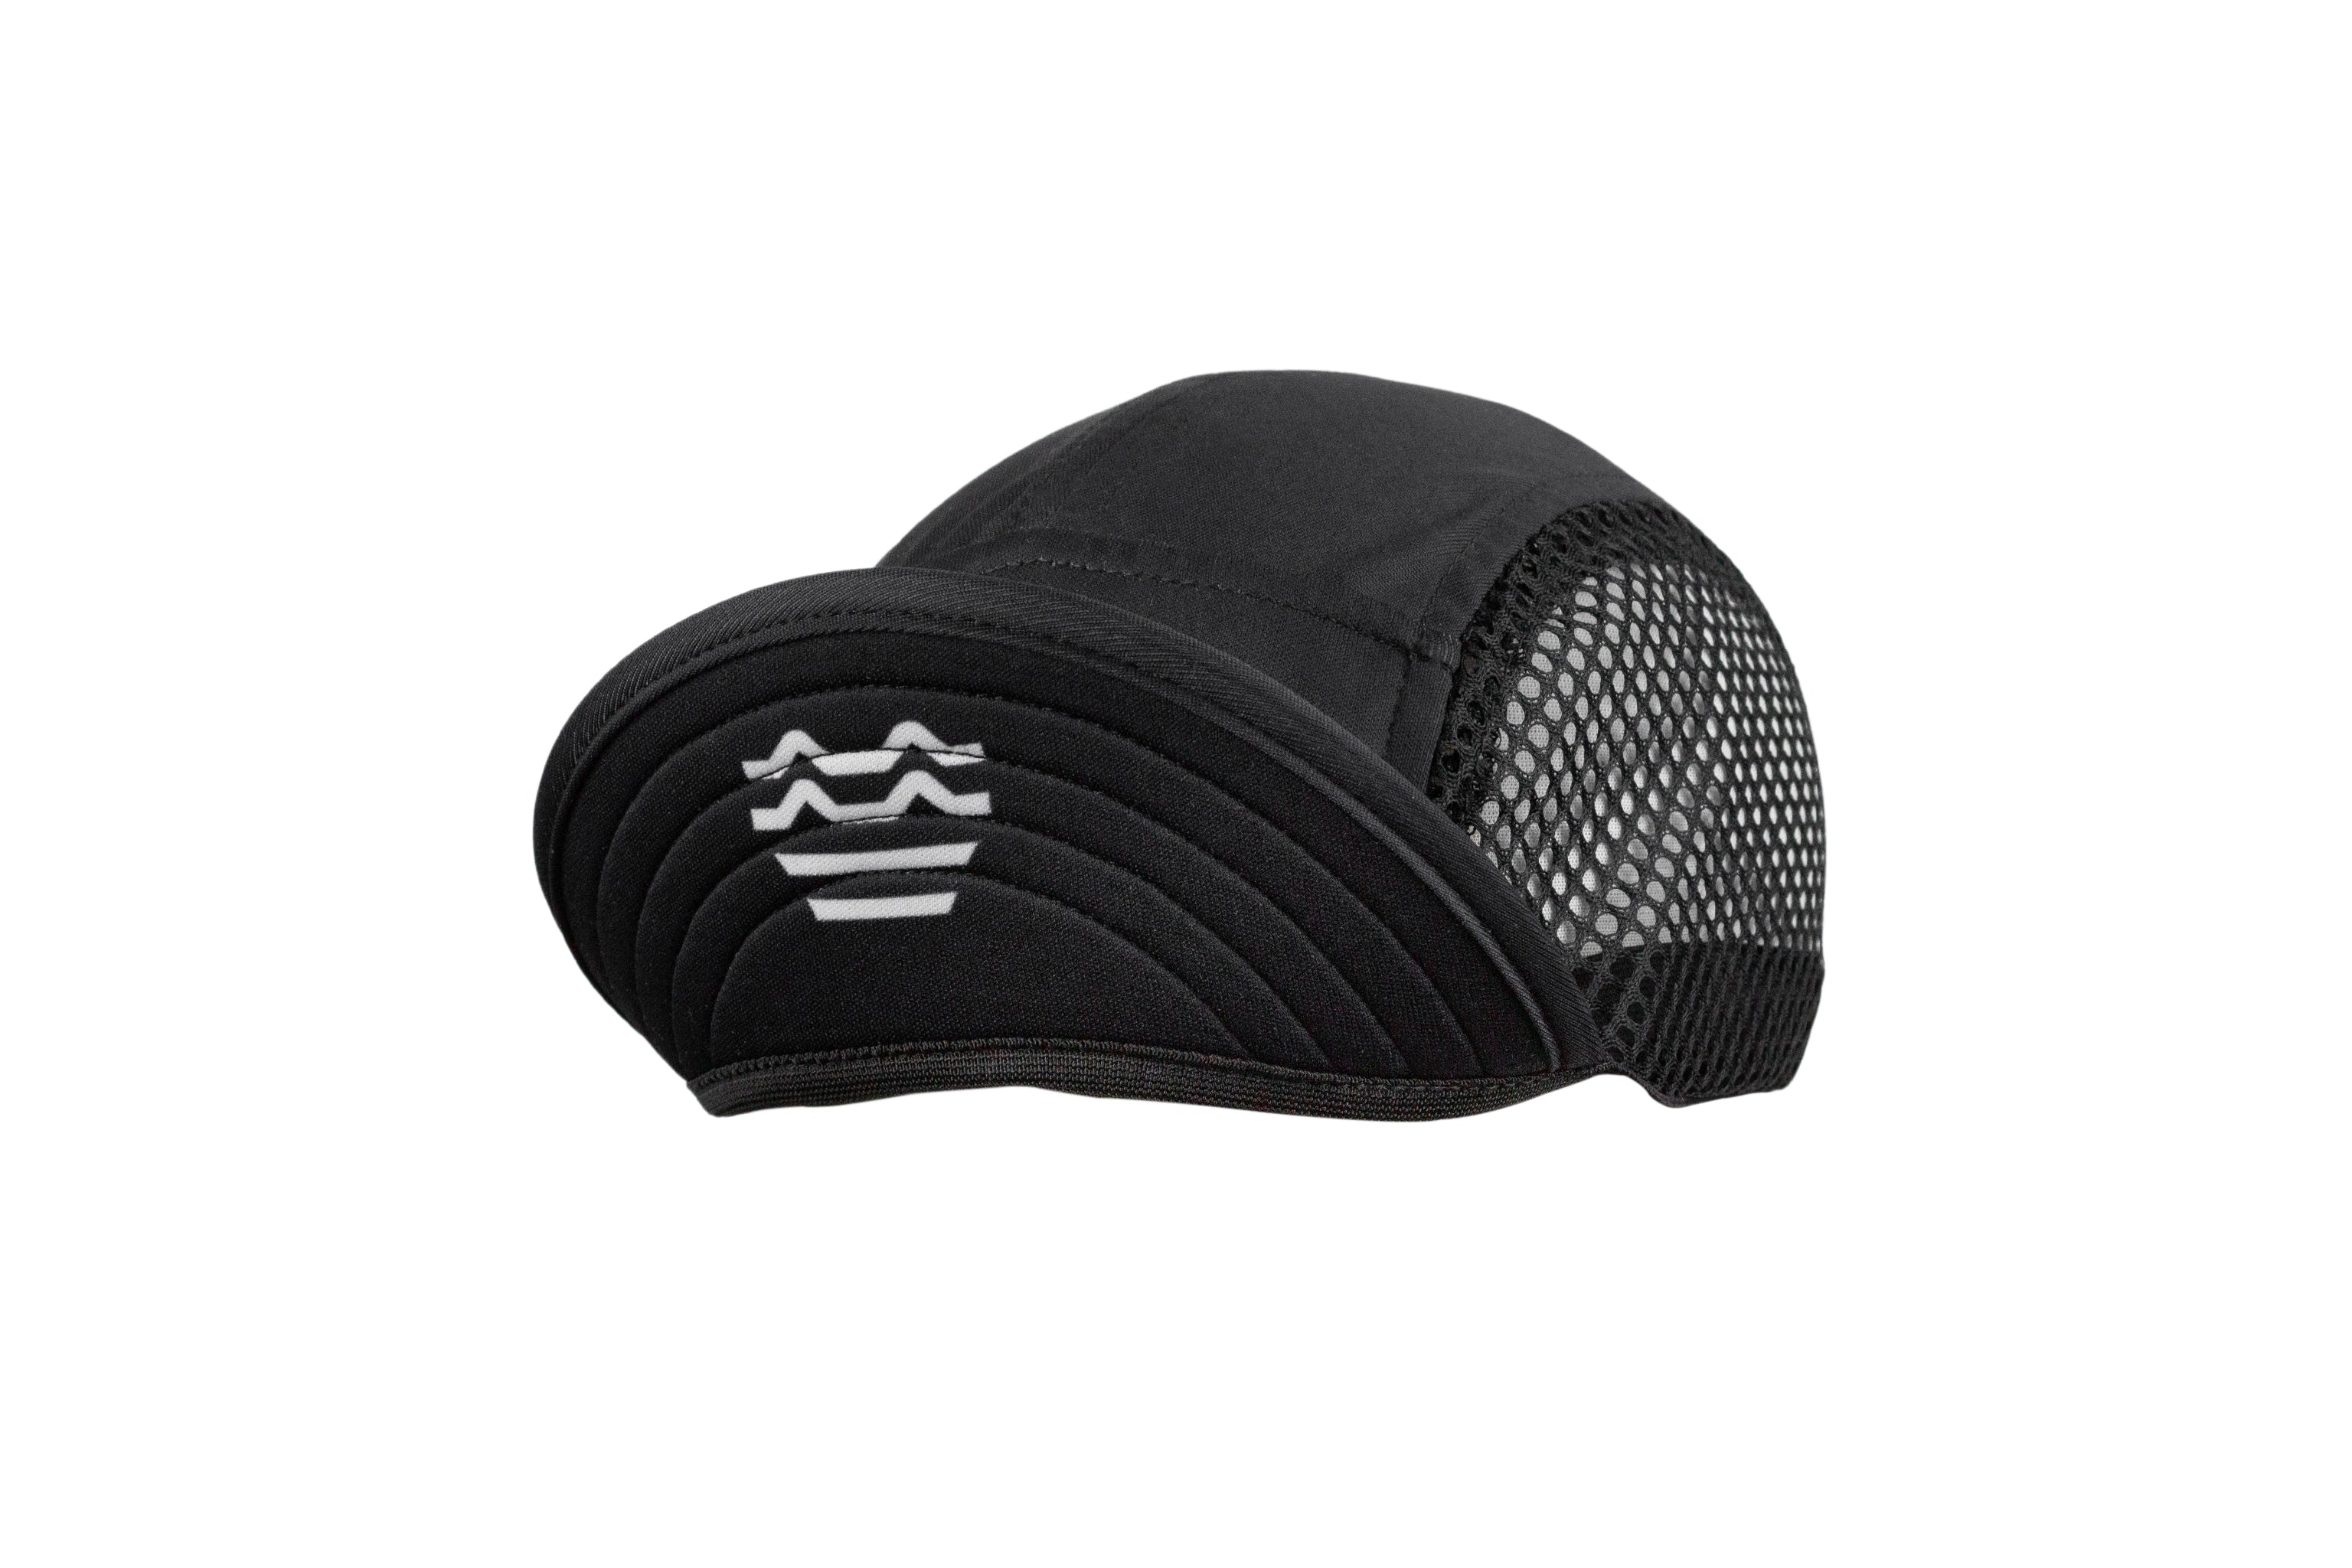 GW Daypack Mesh Cycling Cap - All Black